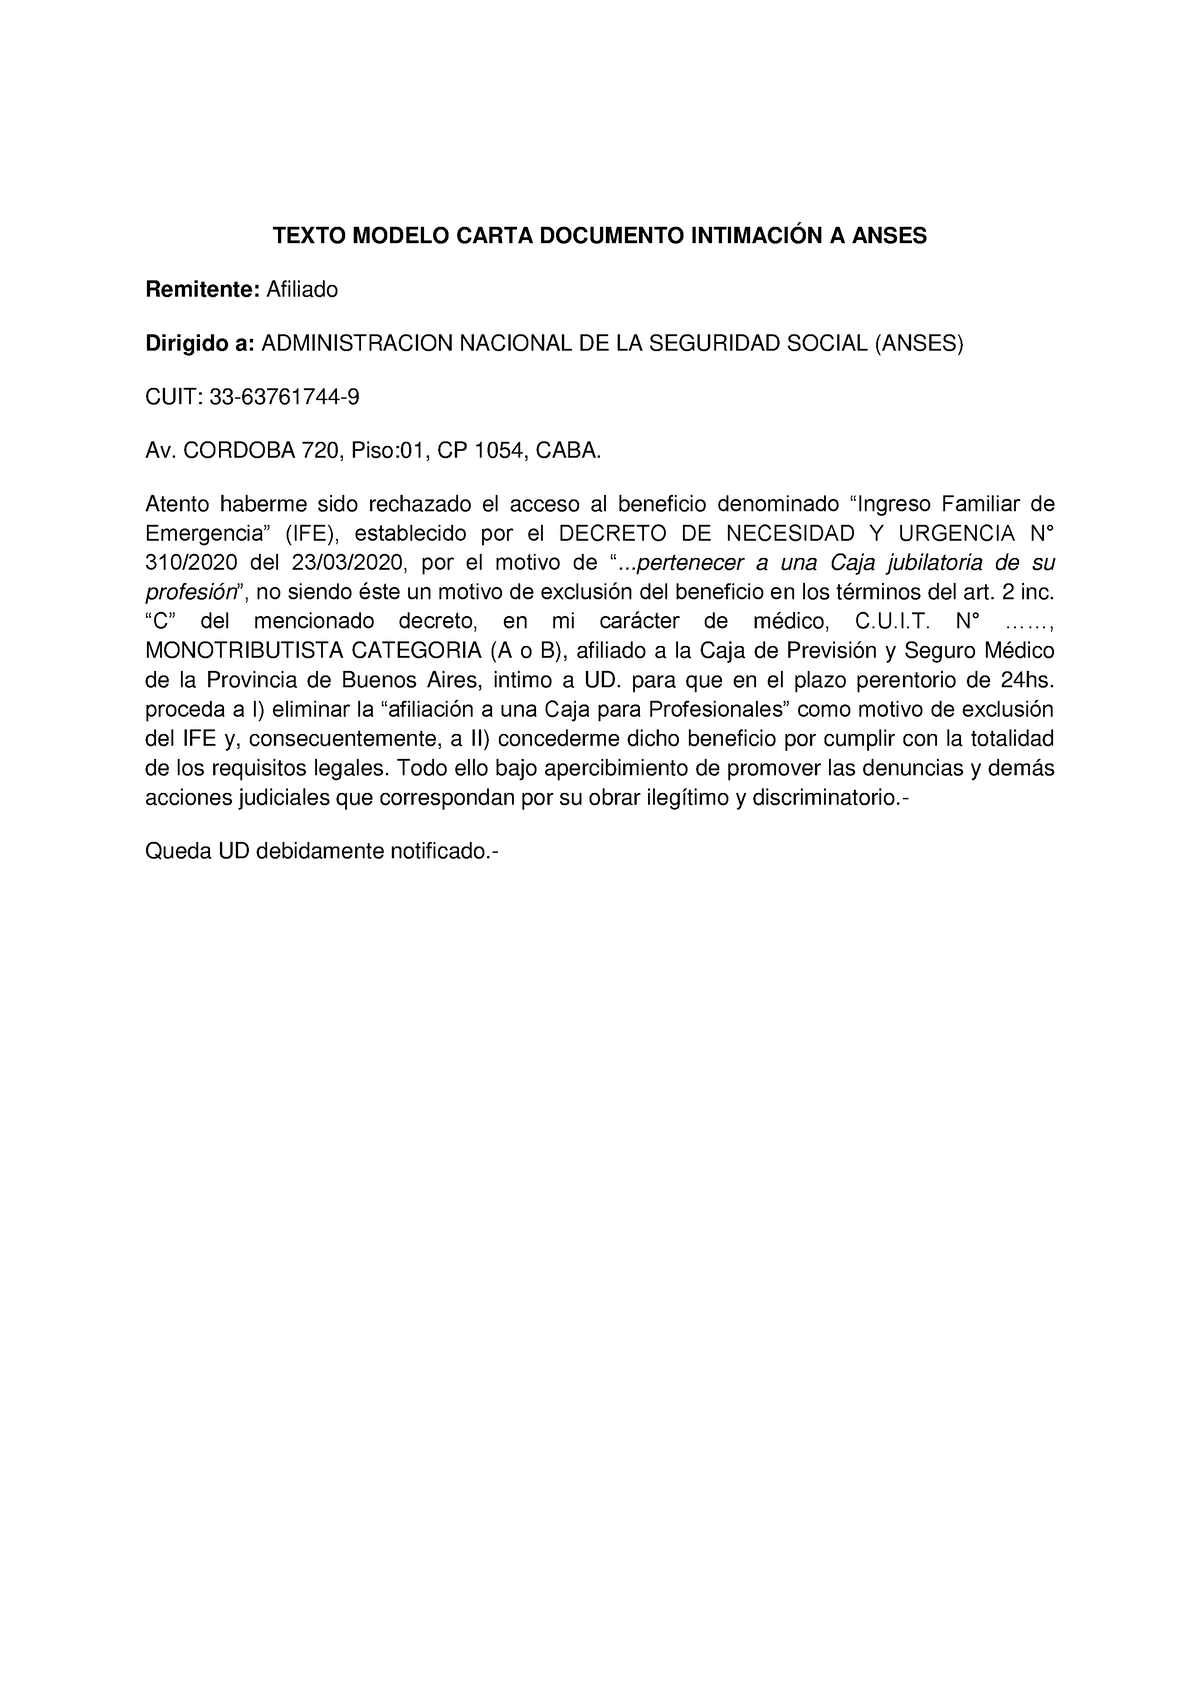 Texto Modelo Intimacion A Anses Texto Modelo Carta Documento IntimaciÓn A Anses Remitente 1414